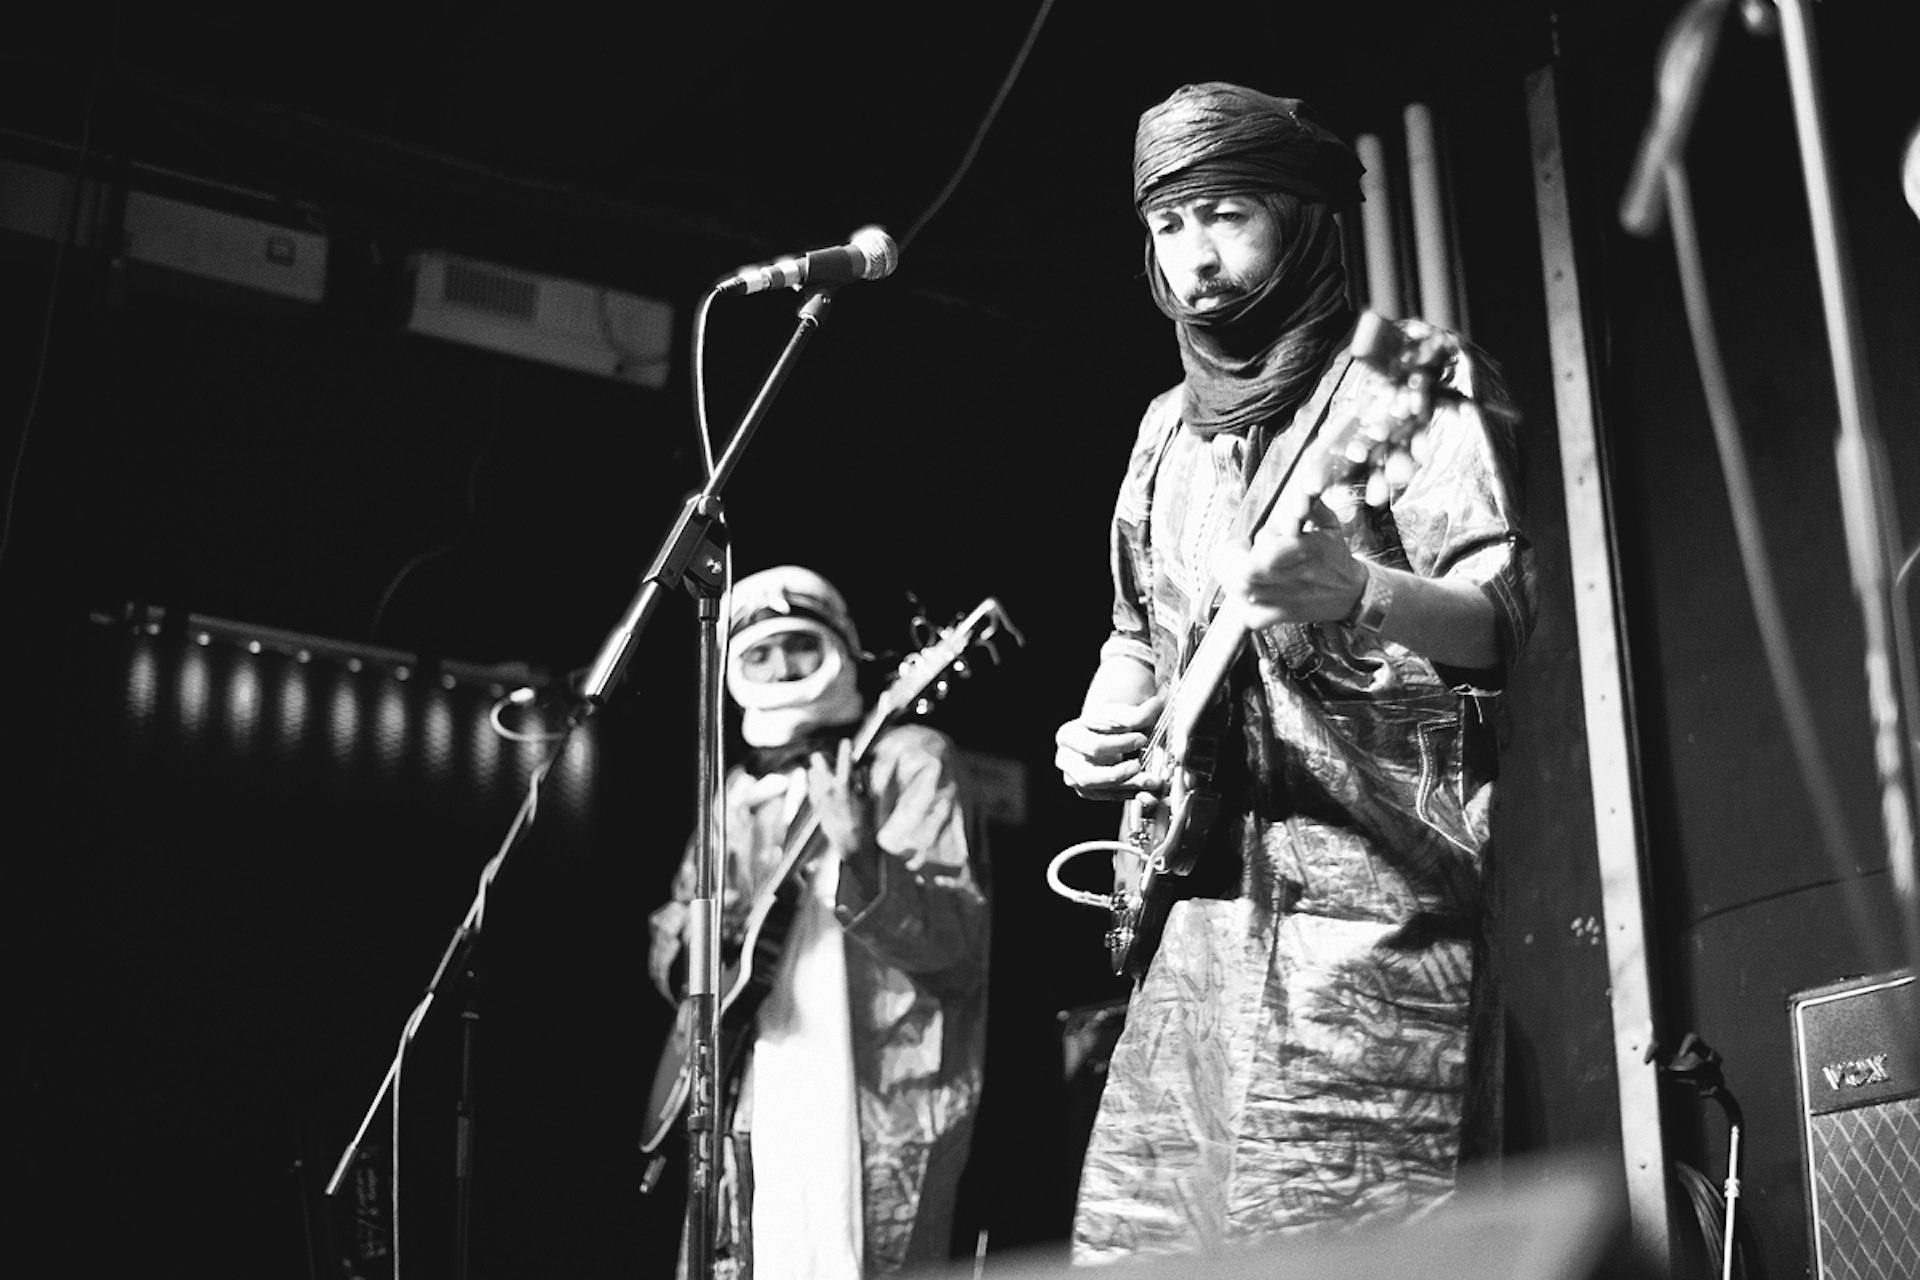 Meet Tuareg rebel rockers Terakaft